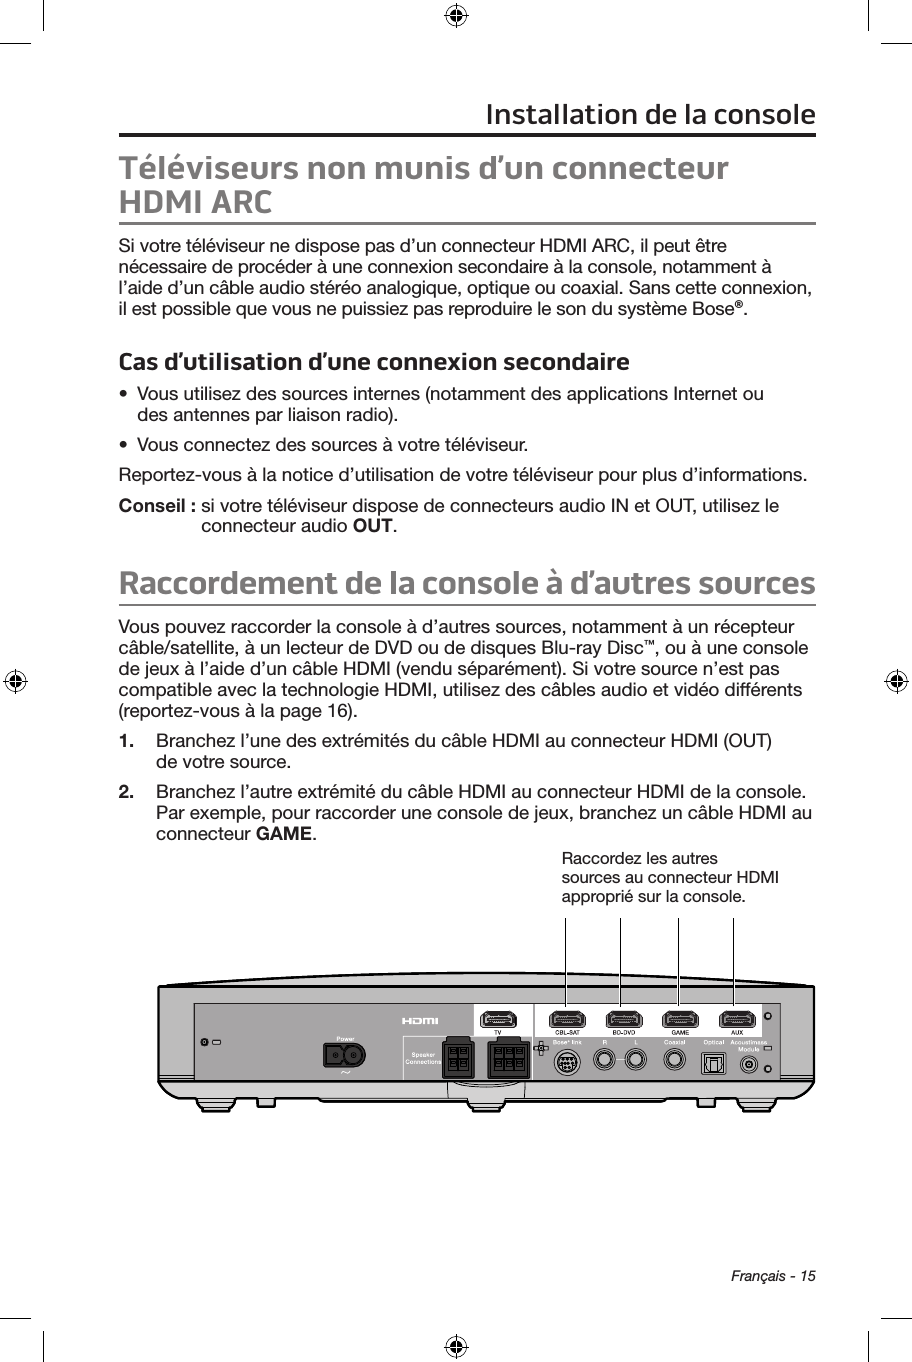 Français - 15Téléviseurs non munis d’un connecteur HDMI ARCSi votre téléviseur ne dispose pas d’un connecteur HDMI ARC, il peut être nécessaire de procéder à une connexion secondaire à la console, notamment à l’aide d’un câble audio stéréo analogique, optique ou coaxial. Sans cette connexion, il est possible que vous ne puissiez pas reproduire le son du système Bose®. Cas d’utilisation d’une connexion secondaire•  Vous utilisez des sources internes (notamment des applications Internet ou  des antennes par liaison radio).•  Vous connectez des sources à votre téléviseur. Reportez‑vous à la notice d’utilisation de votre téléviseur pour plus d’informations. Conseil :  si votre téléviseur dispose de connecteurs audio IN et OUT, utilisez le connecteur audio OUT.Raccordement de la console à d’autres sourcesVous pouvez raccorder la console à d’autres sources, notamment à un récepteur câble/satellite, à un lecteur de DVD ou de disques Blu‑ray Disc™, ou à une console de jeux à l’aide d’un câble HDMI (vendu séparément). Si votre source n’est pas compatible avec la technologie HDMI, utilisez des câbles audio et vidéo différents  (reportez‑vous à la page 16).1.  Branchez l’une des extrémités du câble HDMI au connecteur HDMI (OUT) de votre source.2.  Branchez l’autre extrémité du câble HDMI au connecteur HDMI de la console. Par exemple, pour raccorder une console de jeux, branchez un câble HDMI au connecteur GAME.Raccordez les autres sources au connecteur HDMI approprié sur la console.Installation de la console